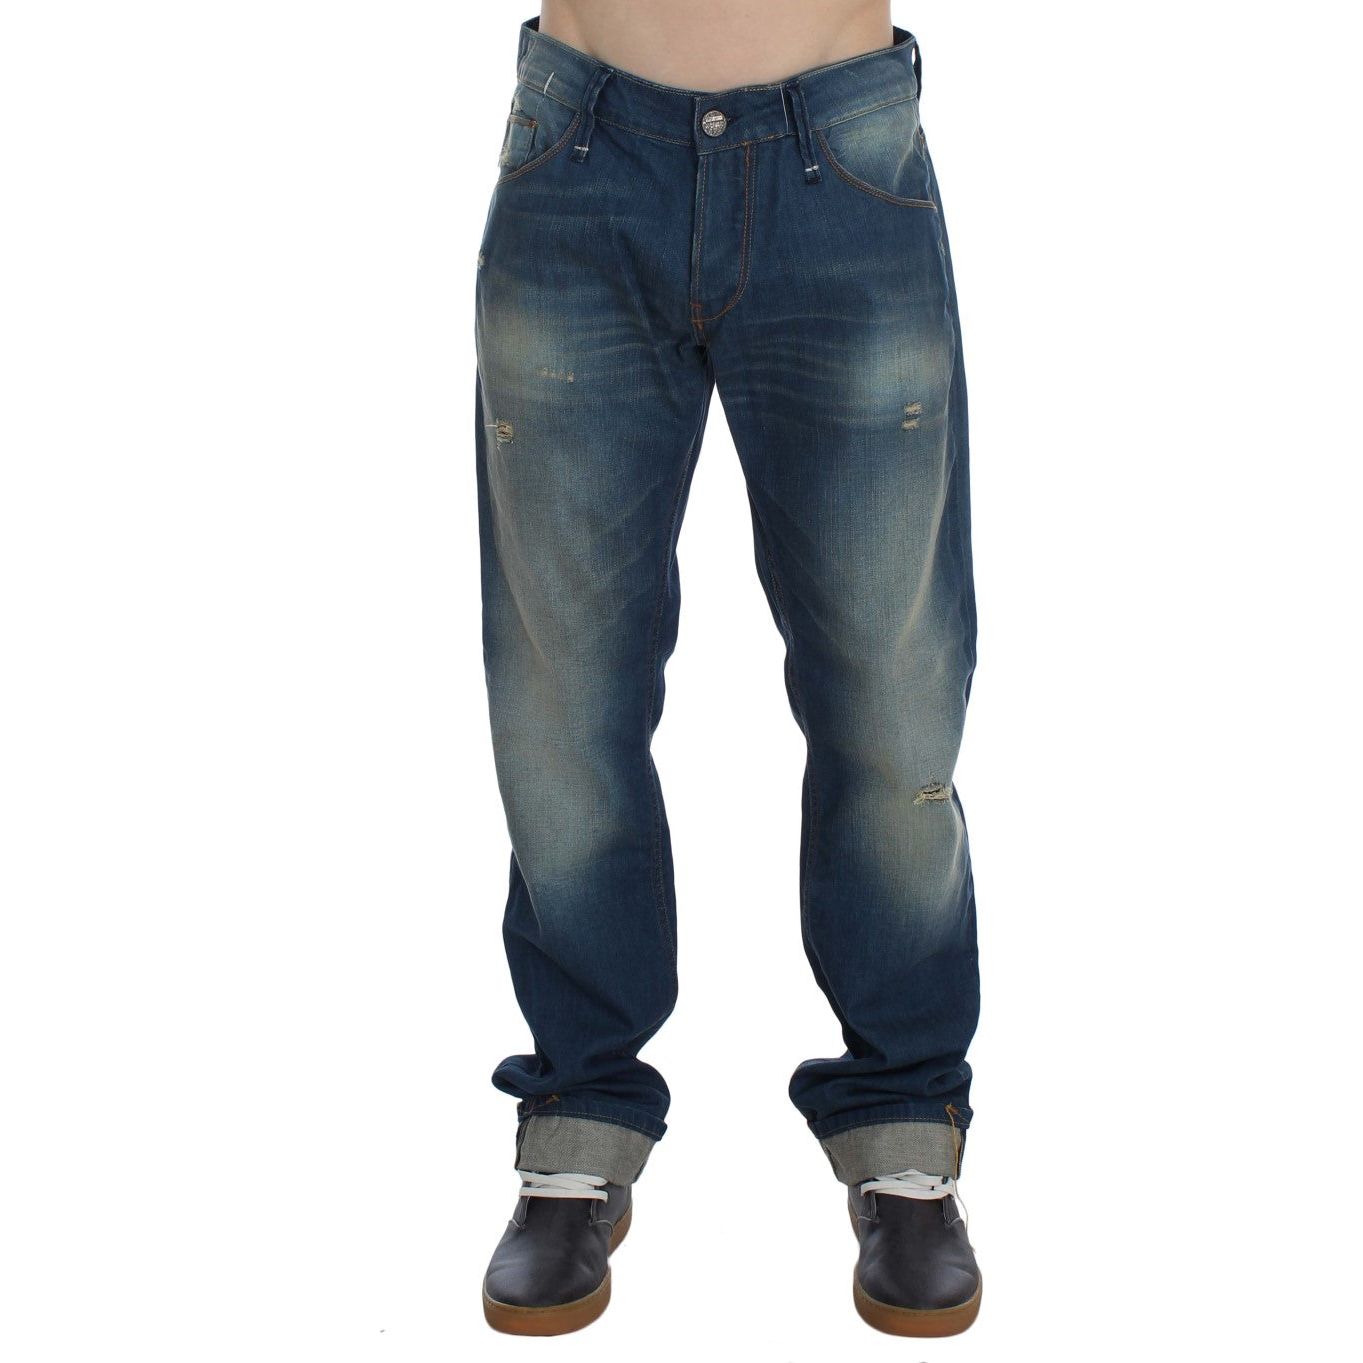 Acht Chic Baggy Low Fit Denim Delight blue-wash-denim-cotton-stretch-baggy-fit-jeans